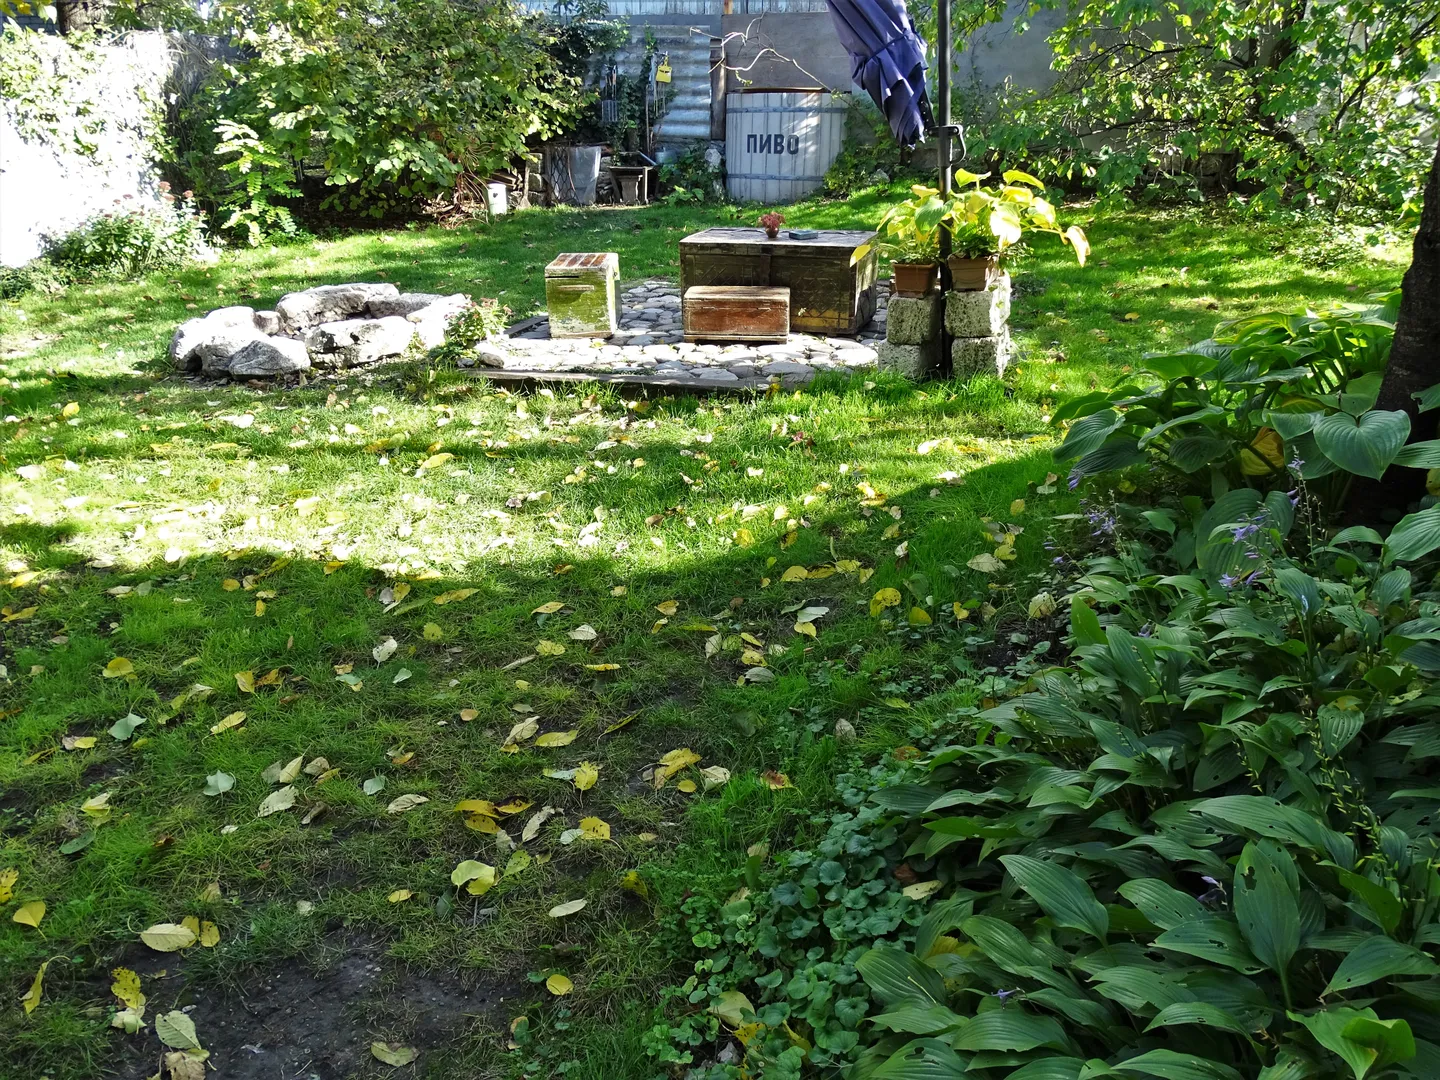 Задний двор с мангальной зоной, костровищем и колодцем